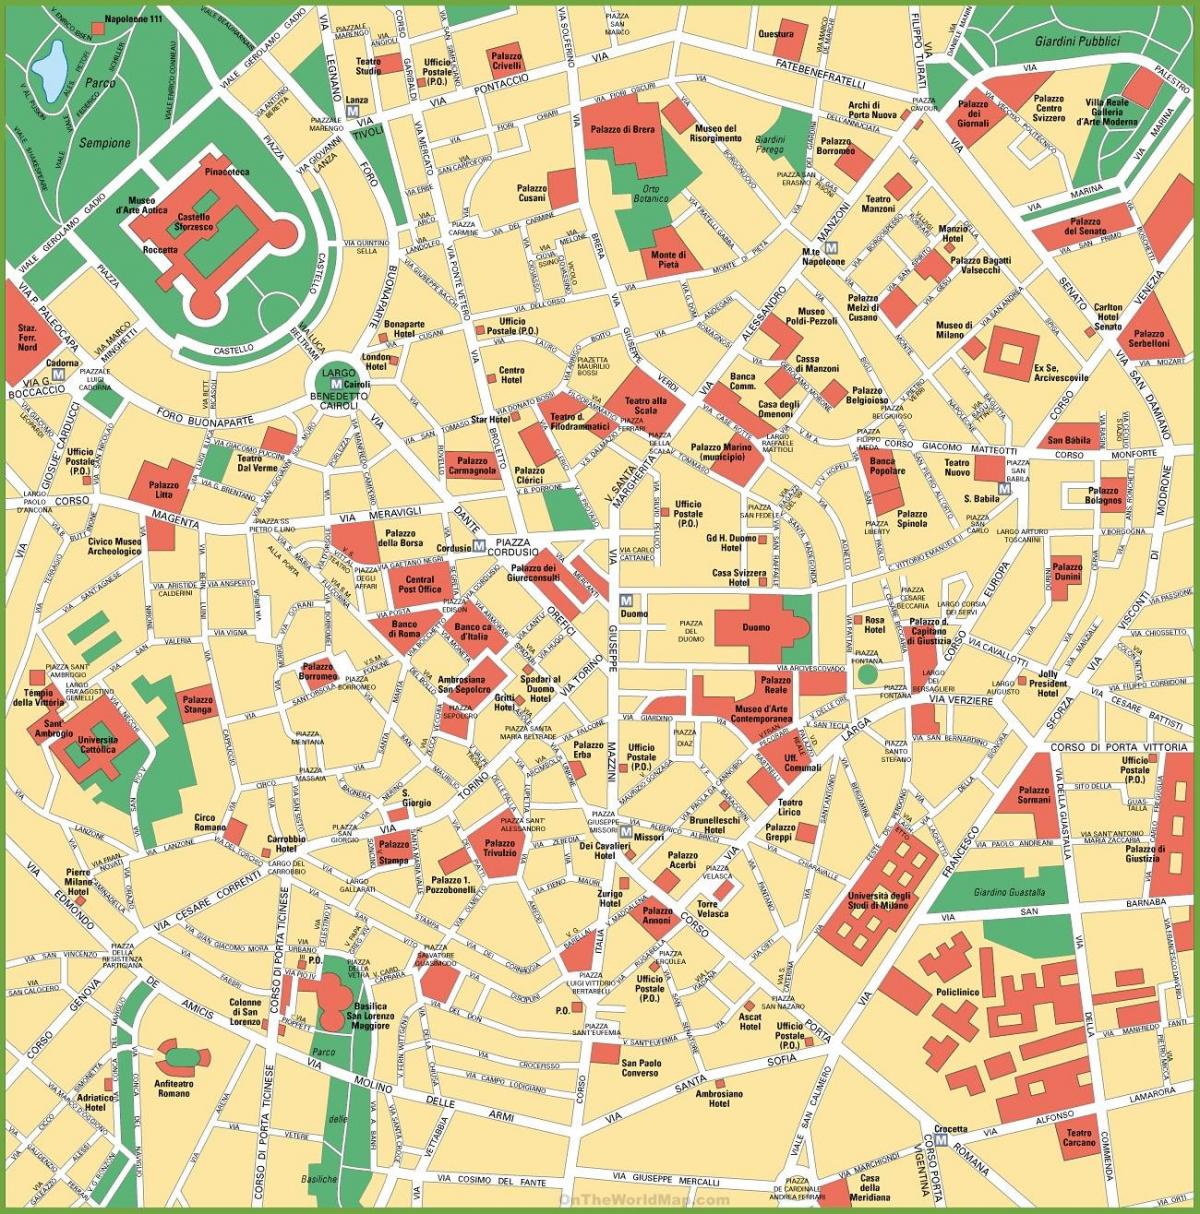 milano city mapa